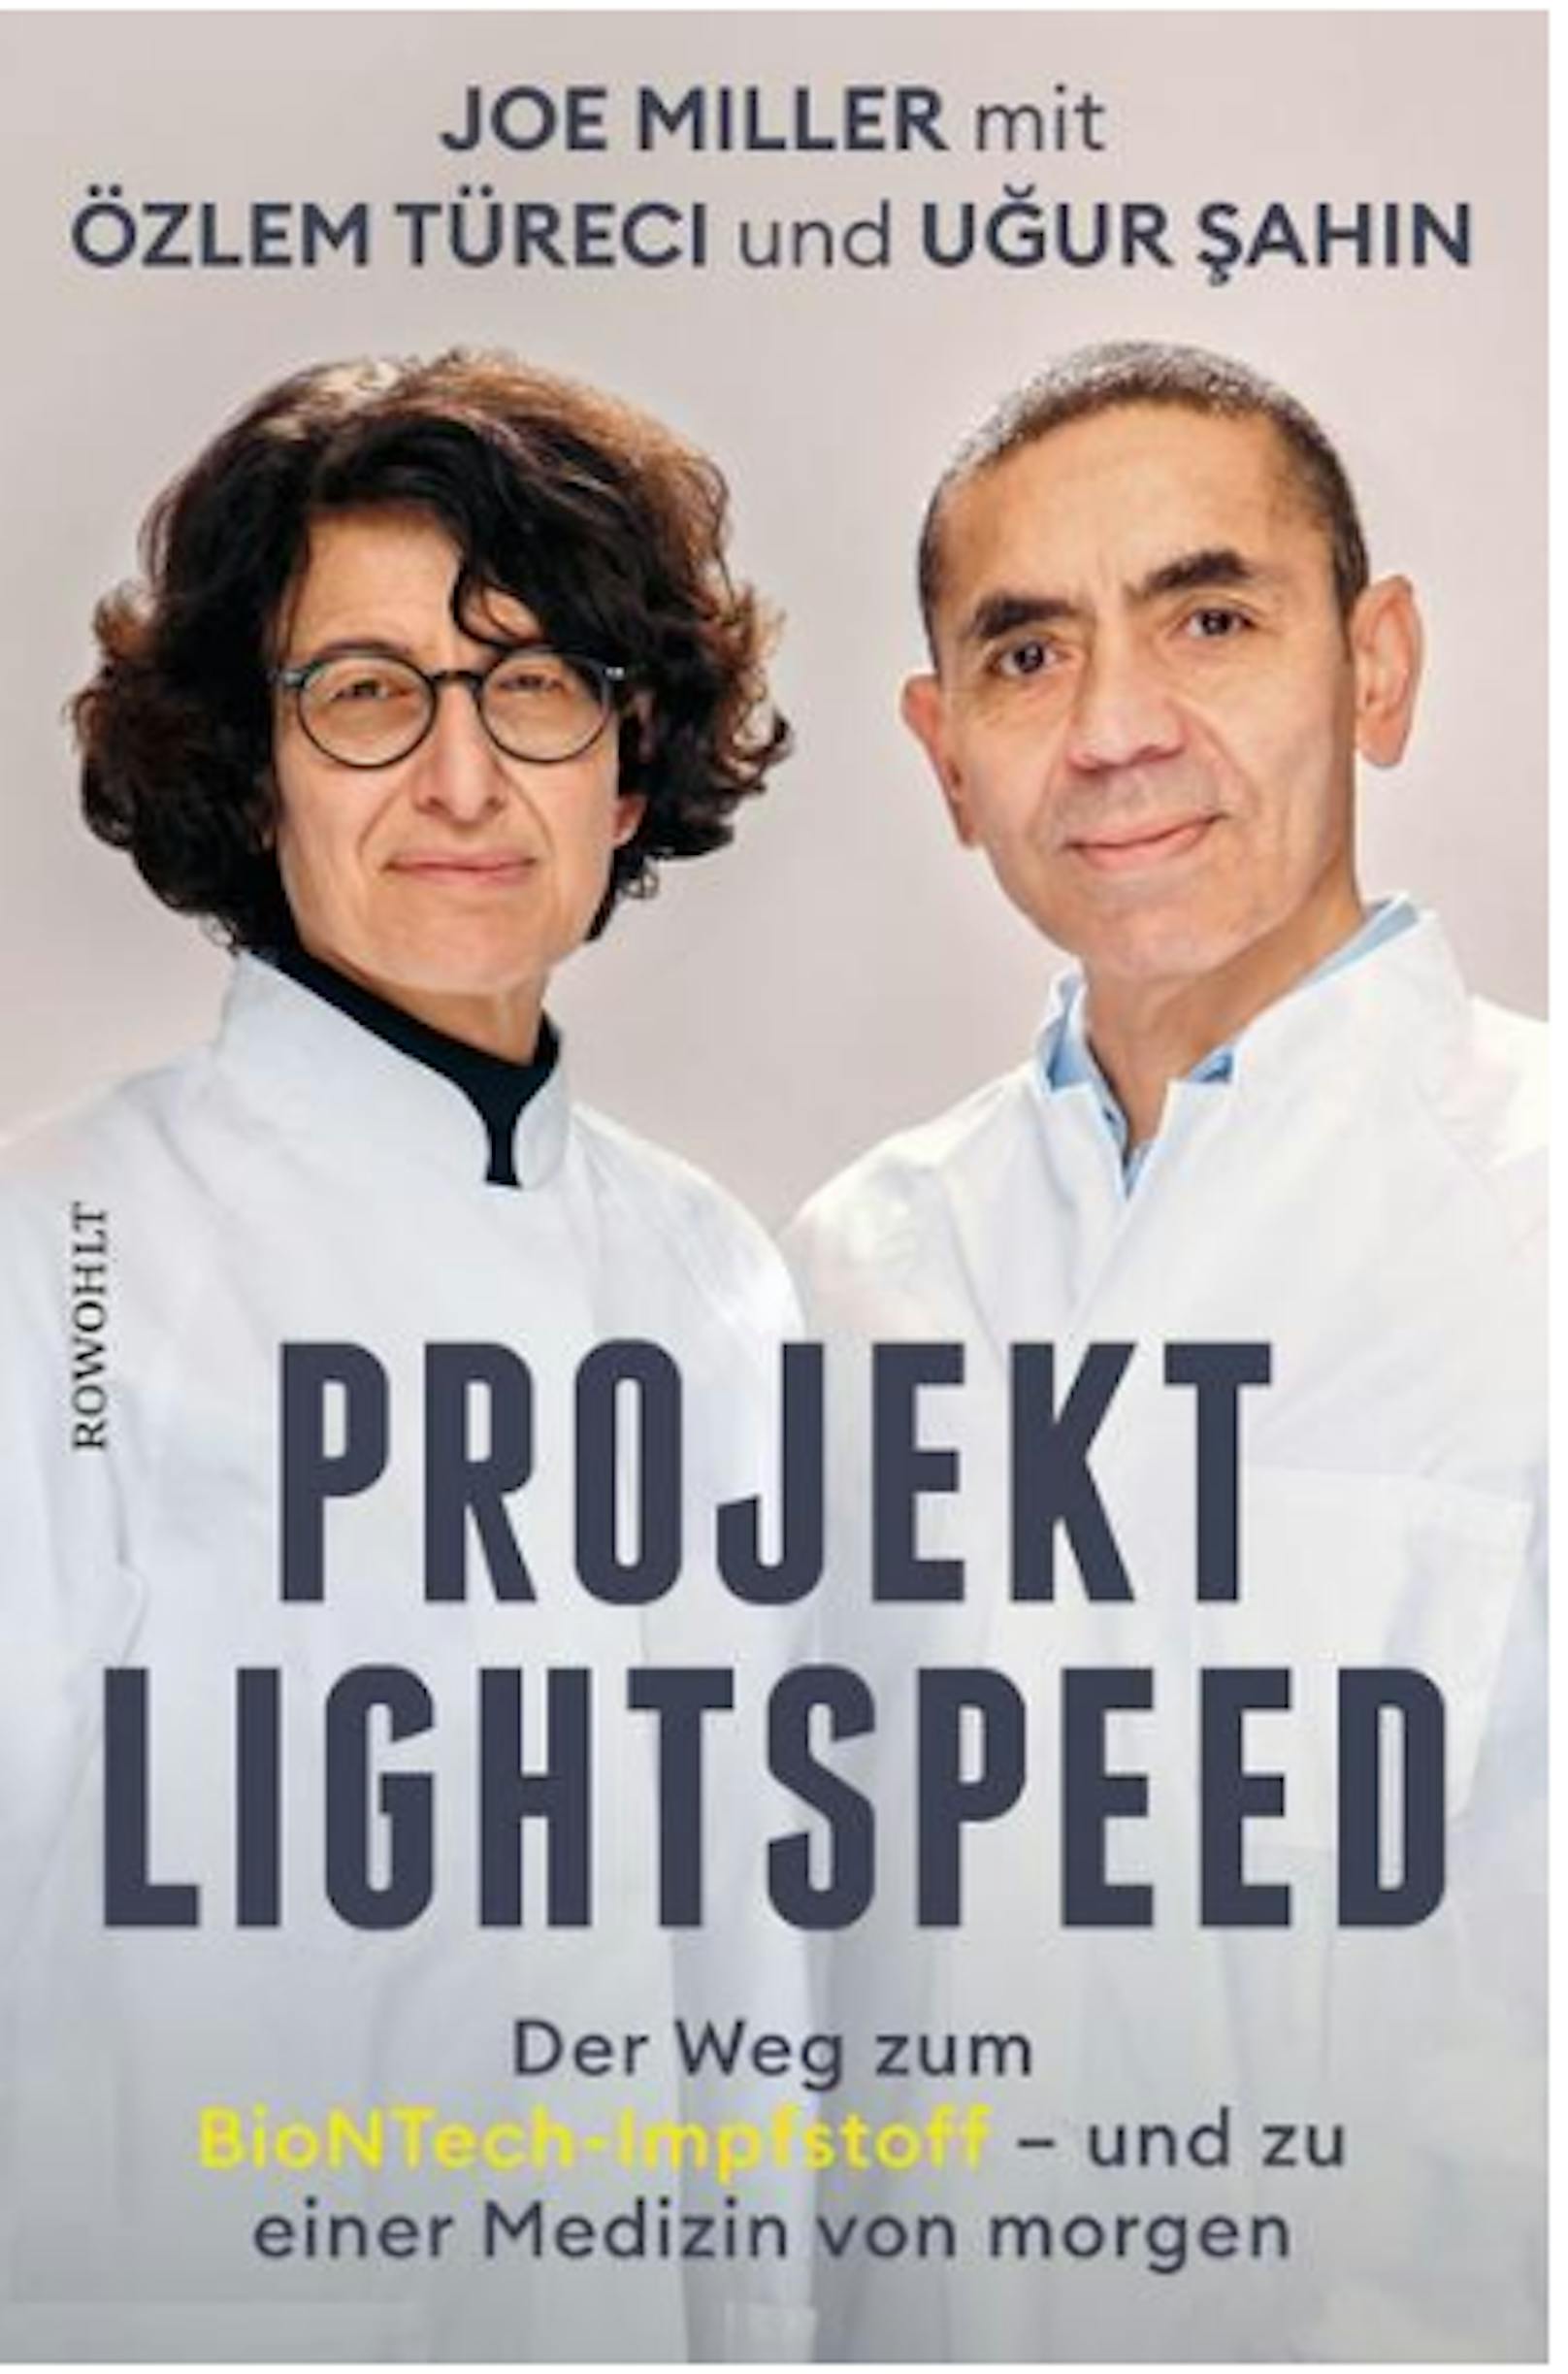 "Projekt Lightspeed: Der Weg zum BioNTech-Impfstoff." 